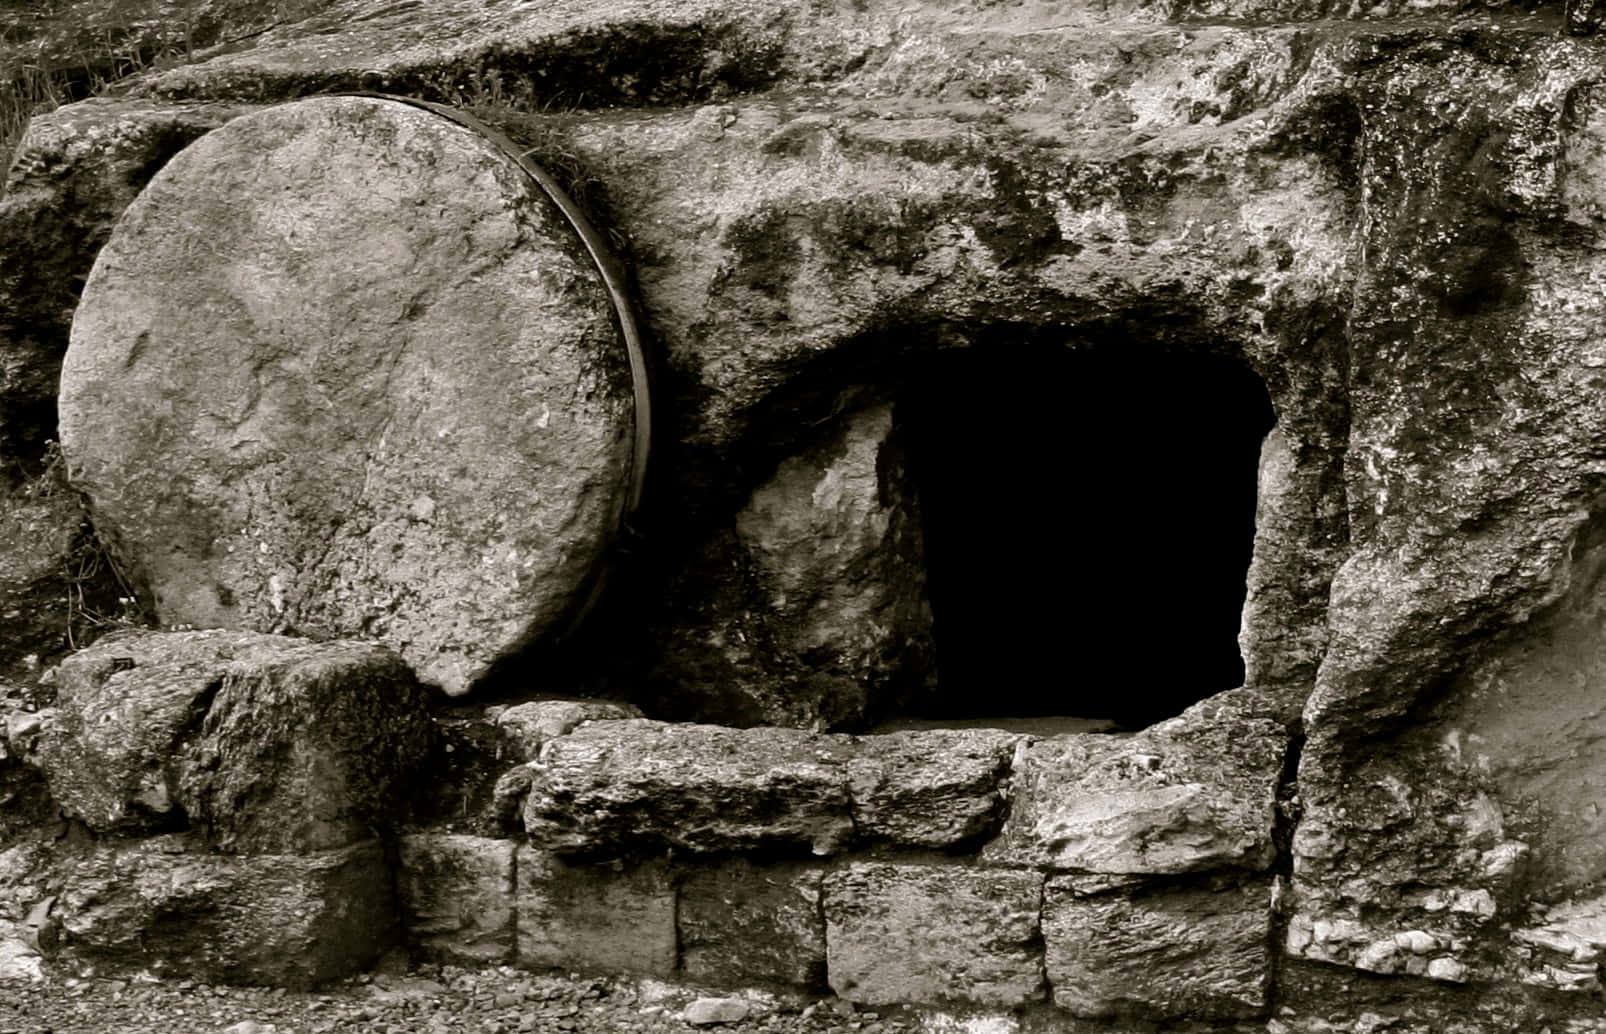 April'immagine Della Tomba Di Gesù Nella Grotta.